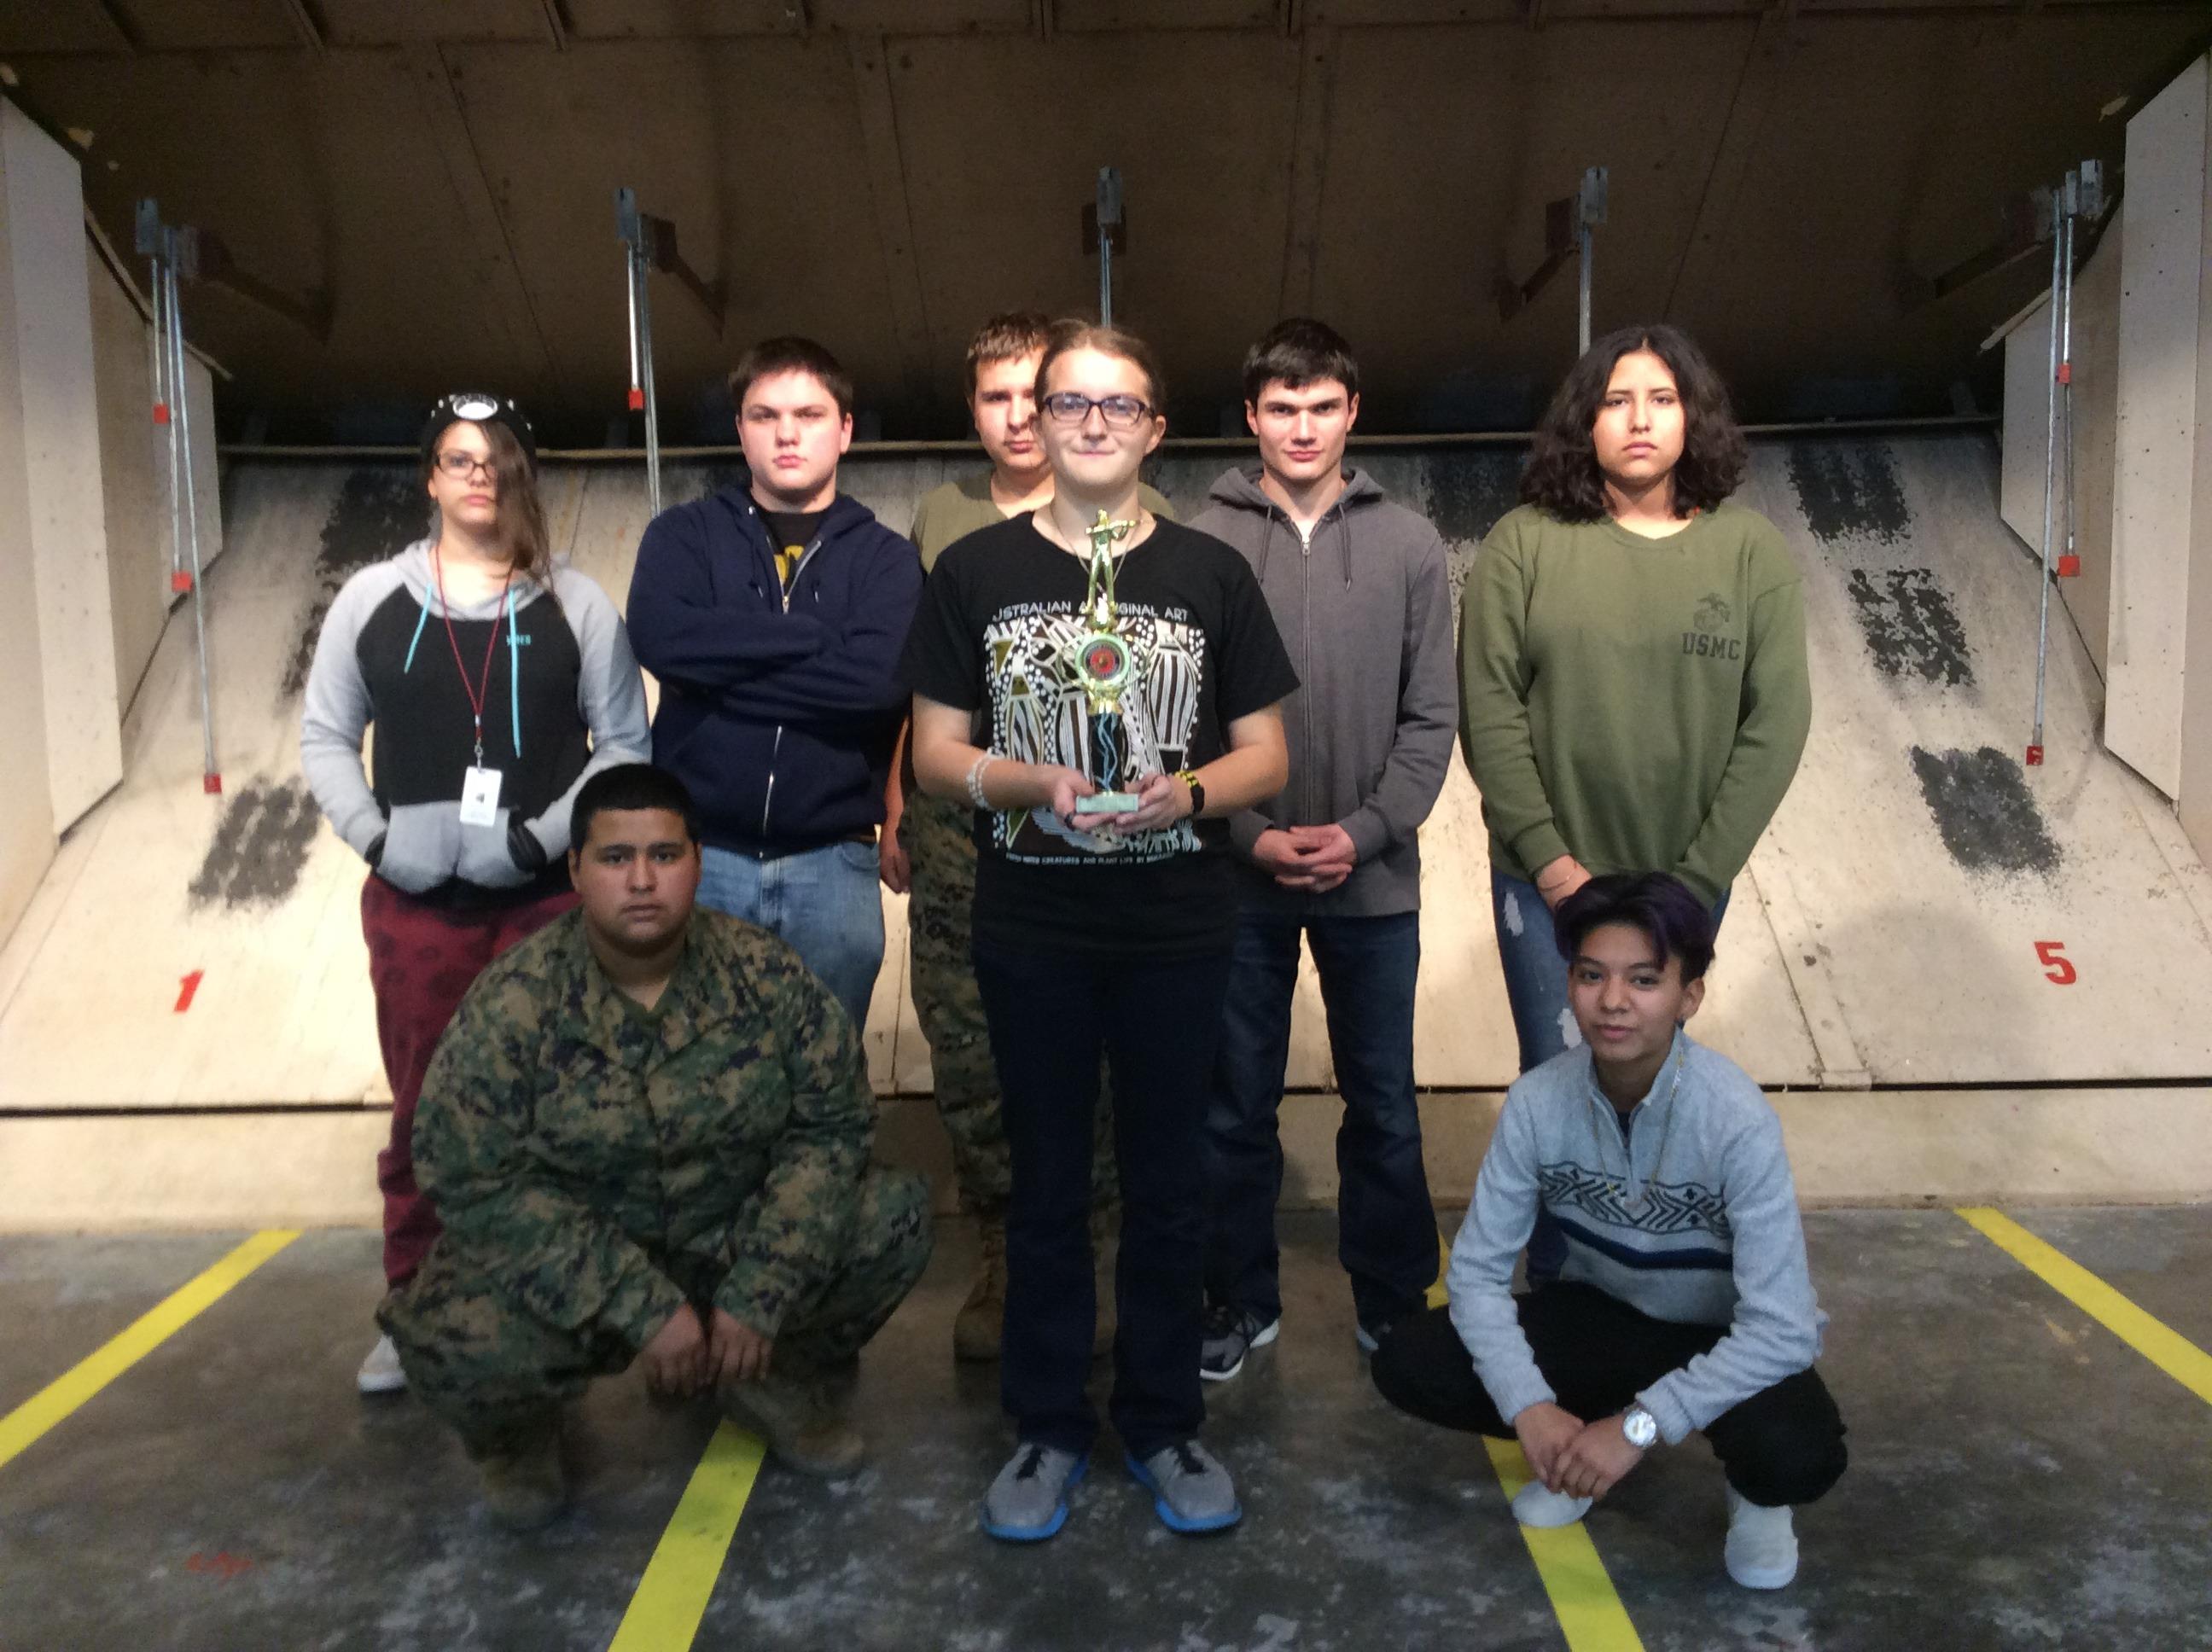 Air-Rifle Team holding a their trophy